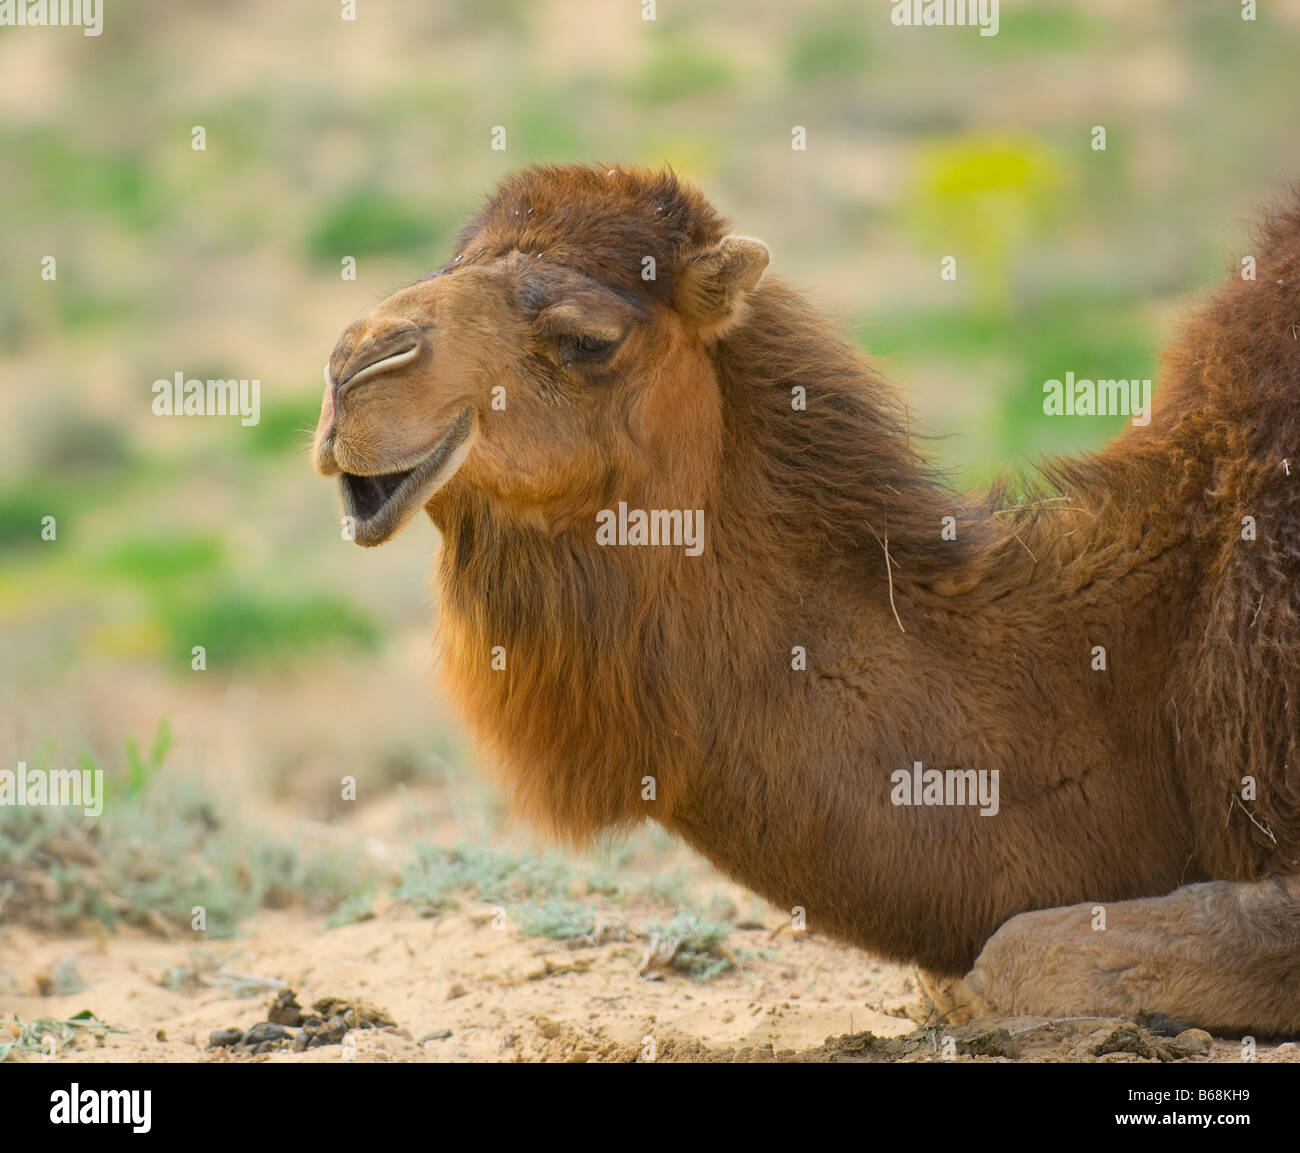 Chiudere l immagine del cammello Foto Stock